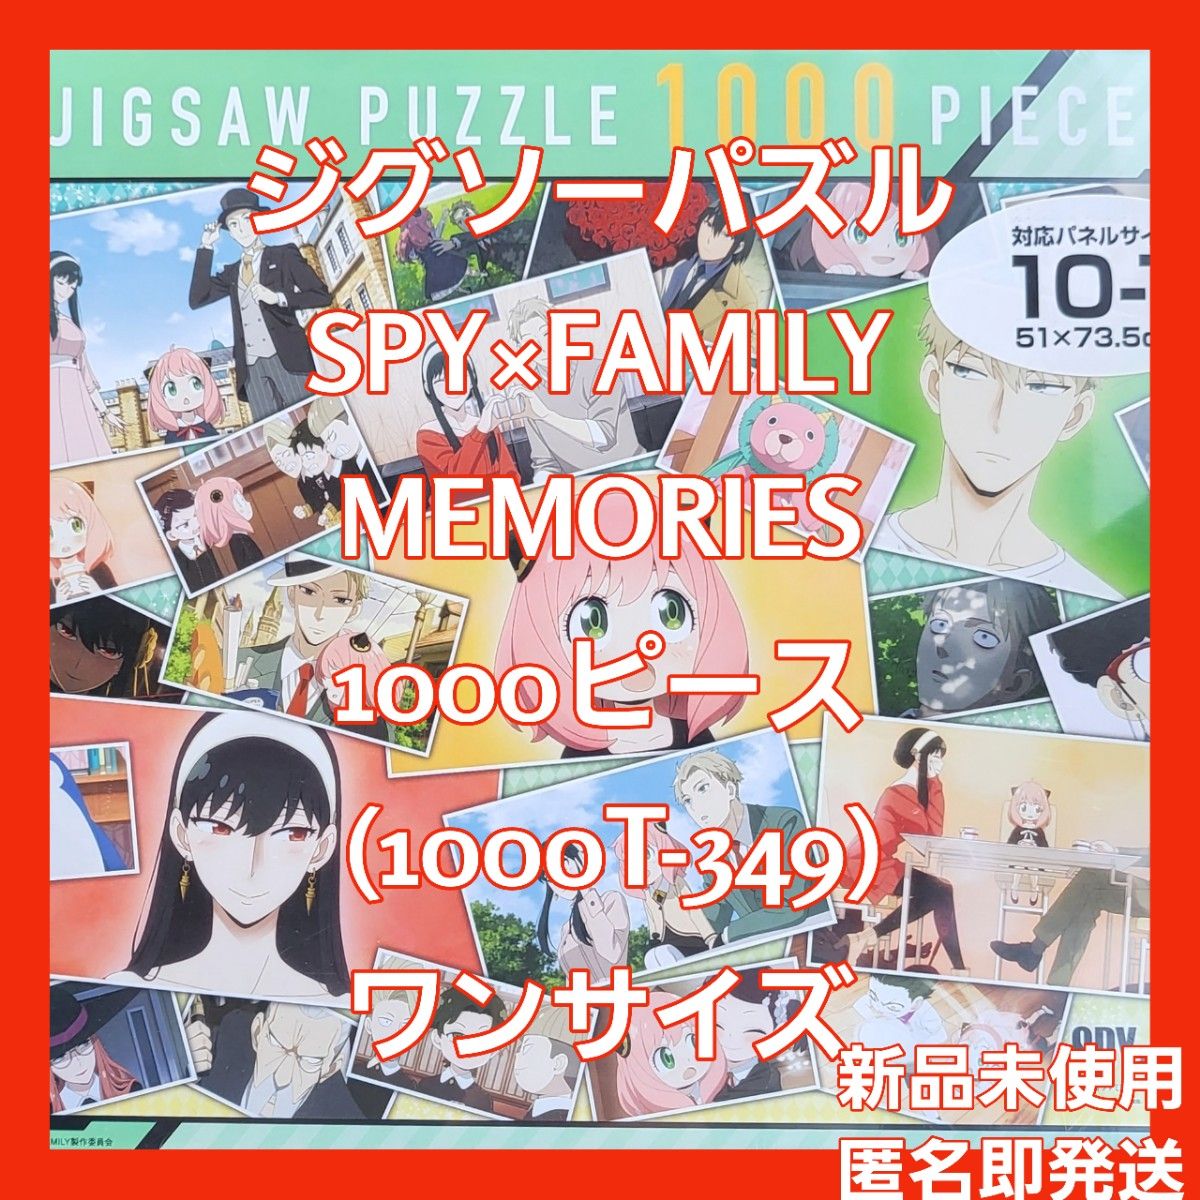 新品未開封☆ジグソーパズル SPY×FAMILY MEMORIES 1000ピース (1000T-349) ワンサイズ